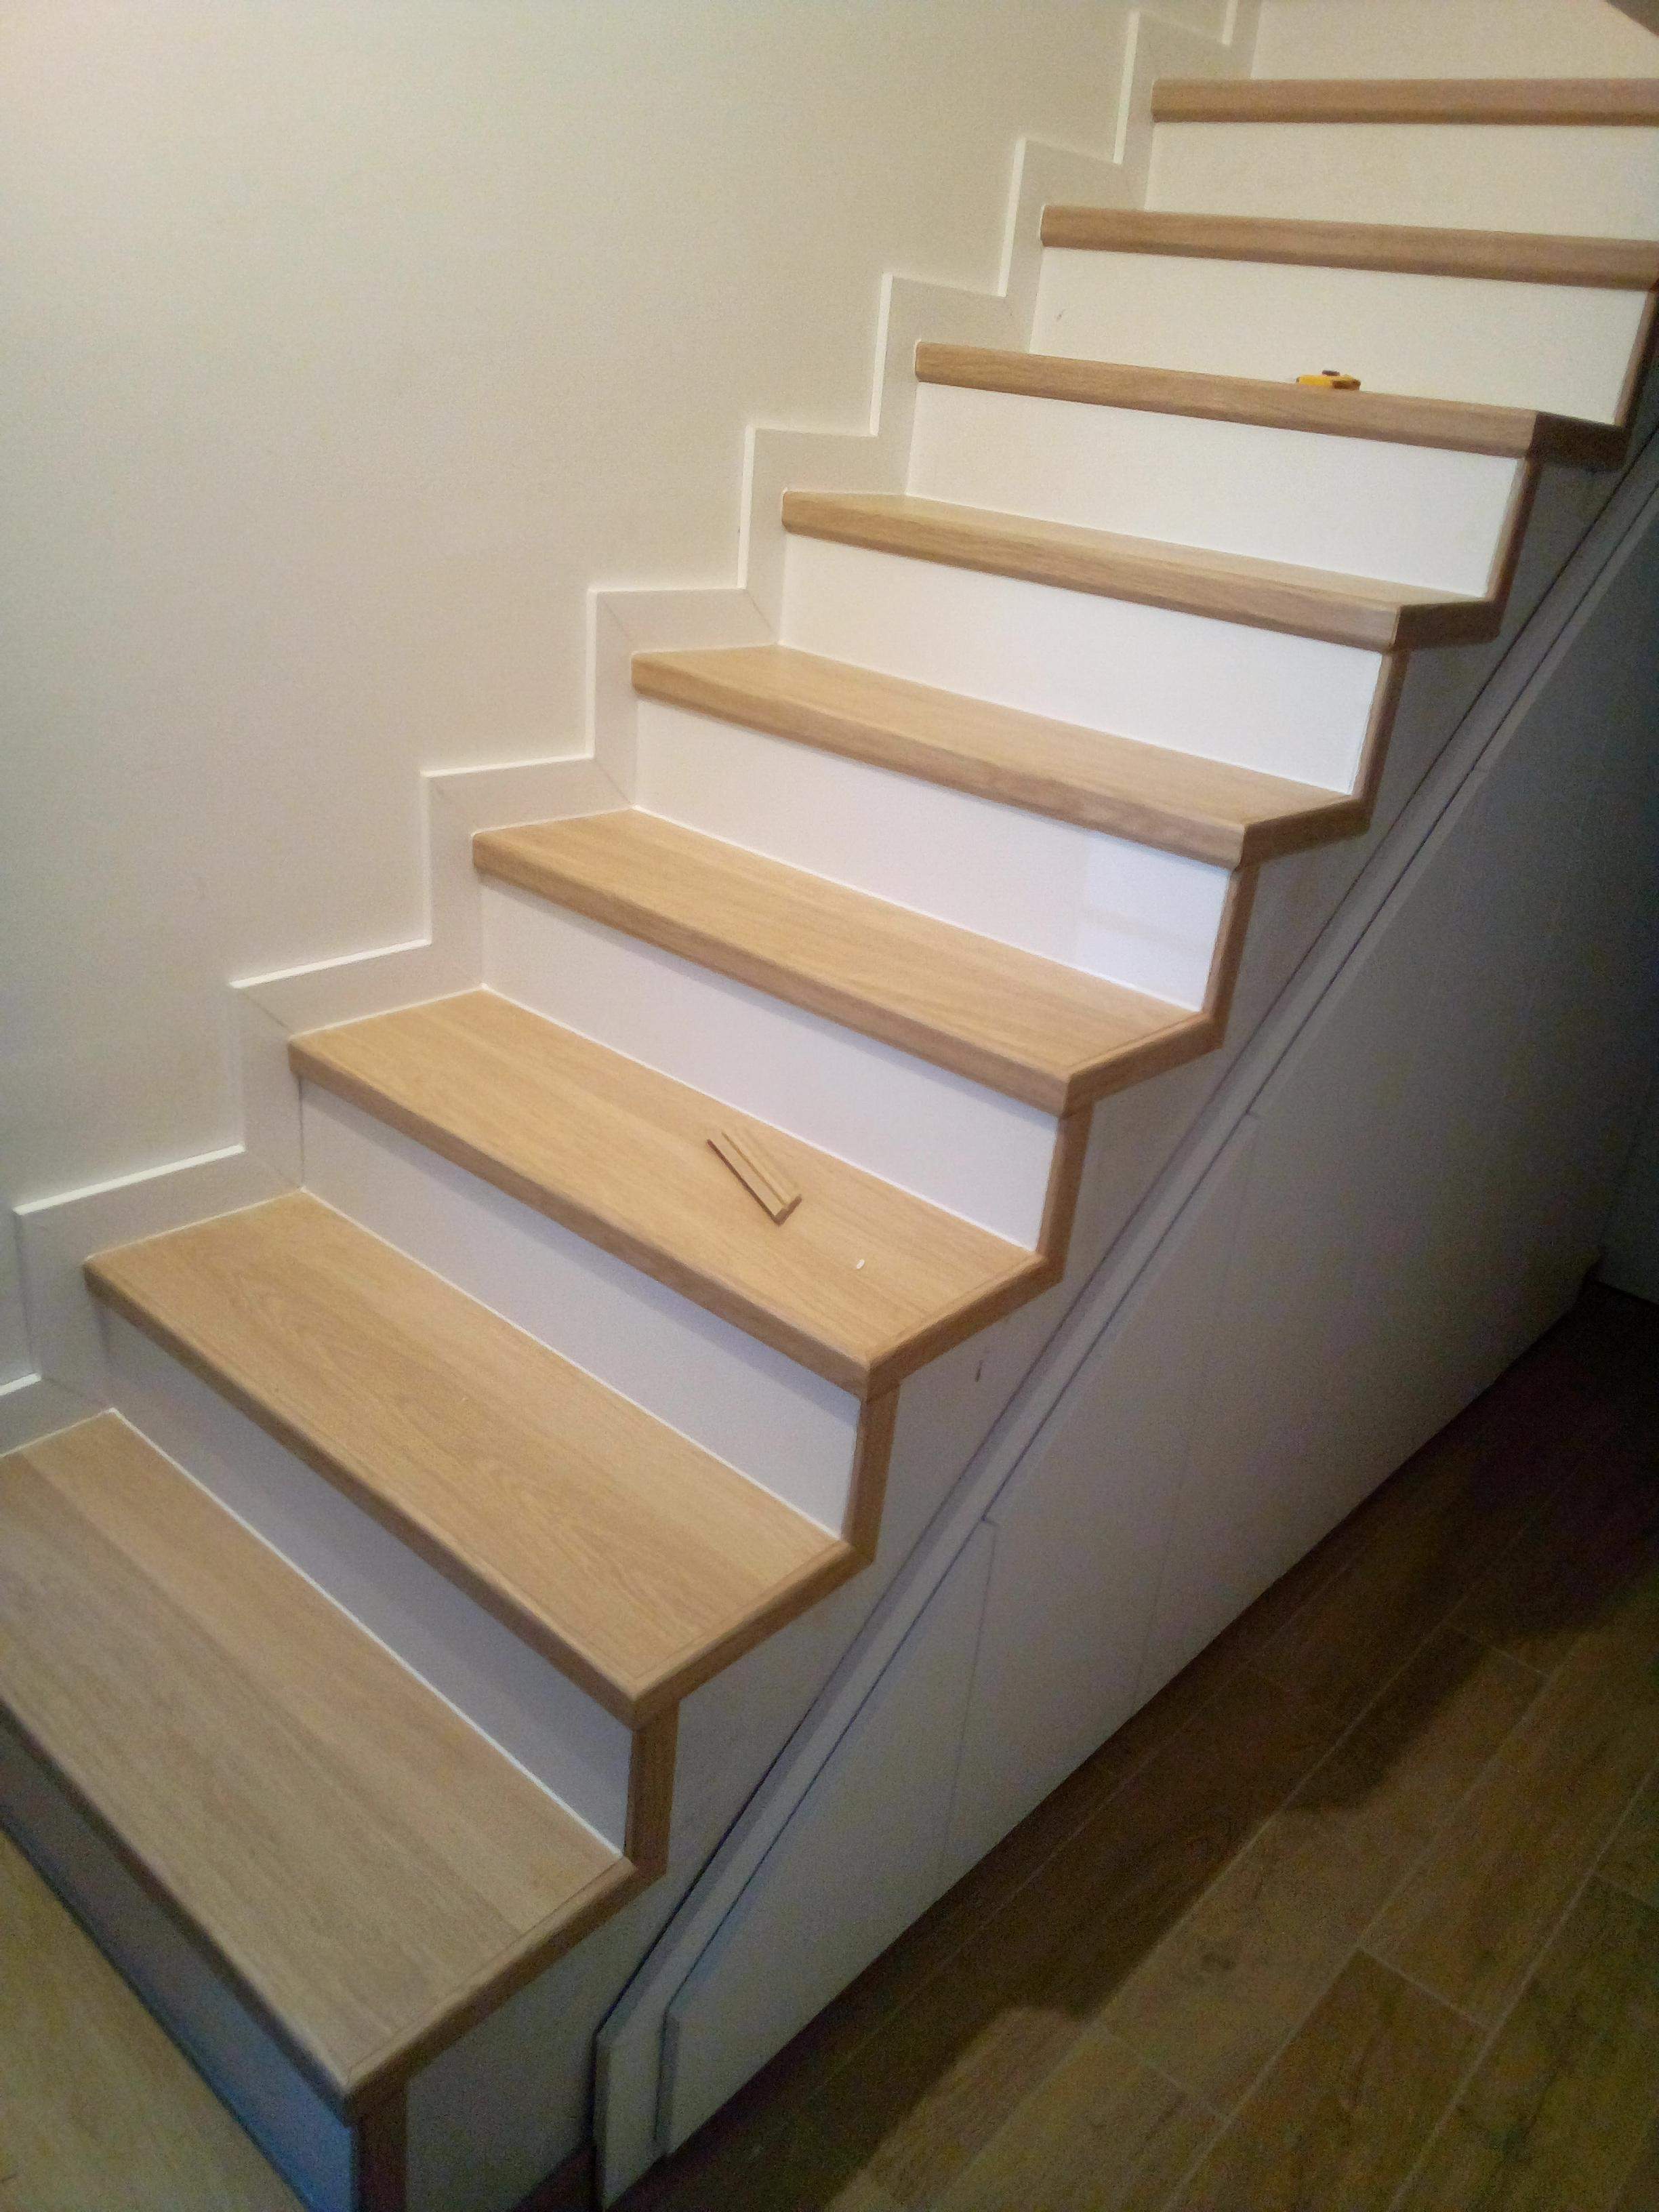 Beton lépcső burkolása, Quick Step laminált padló használatával.